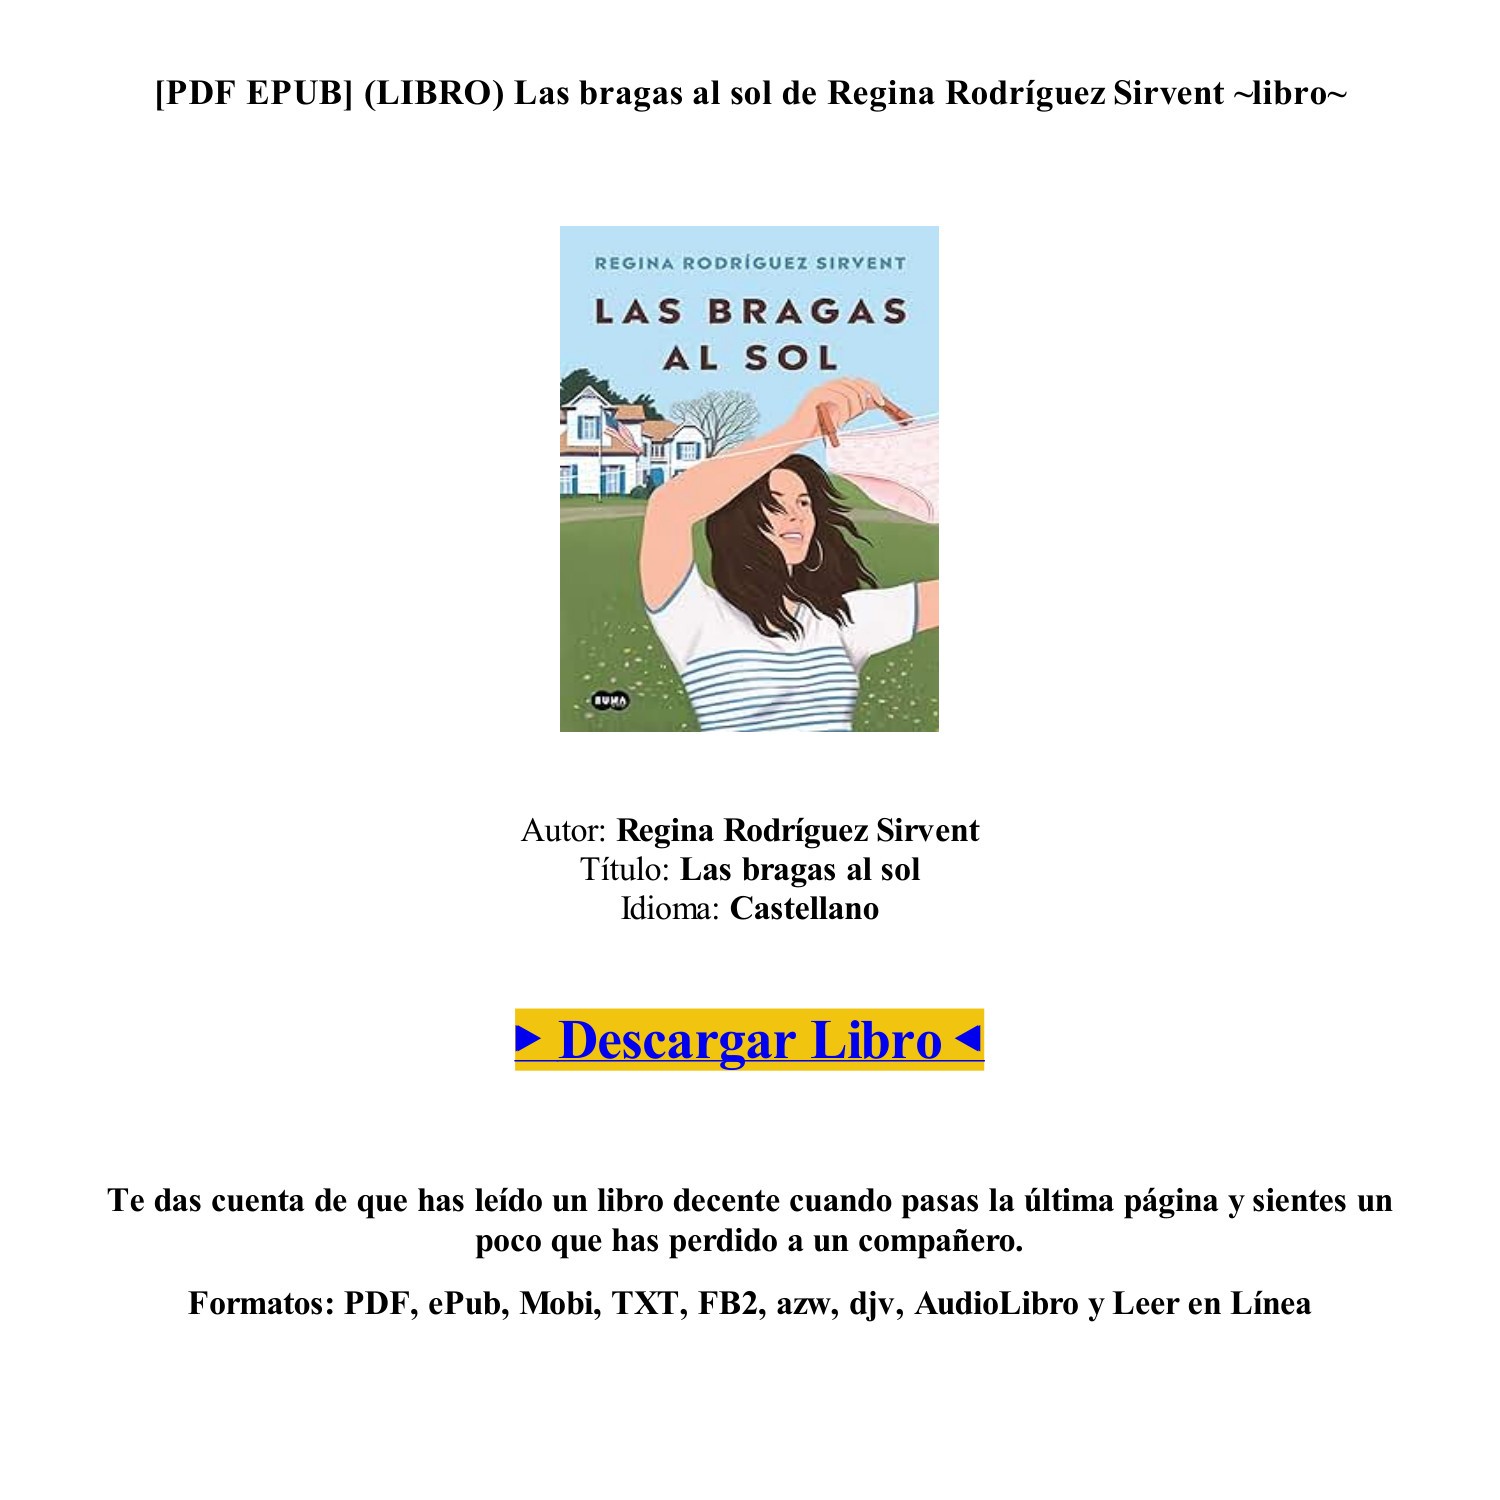 Casa del Libro on X: Regina Rodríguez Sirvent (@holasoclaregi) estuvo  firmando su libro 𝘓𝘢𝘴 𝘣𝘳𝘢𝘨𝘢𝘴 𝘢𝘭 𝘴𝘰𝘭 en nuestra librería de  Fuencarral, Madrid, y todavía quedan ejemplares firmados. ¡Corre y llévate  el